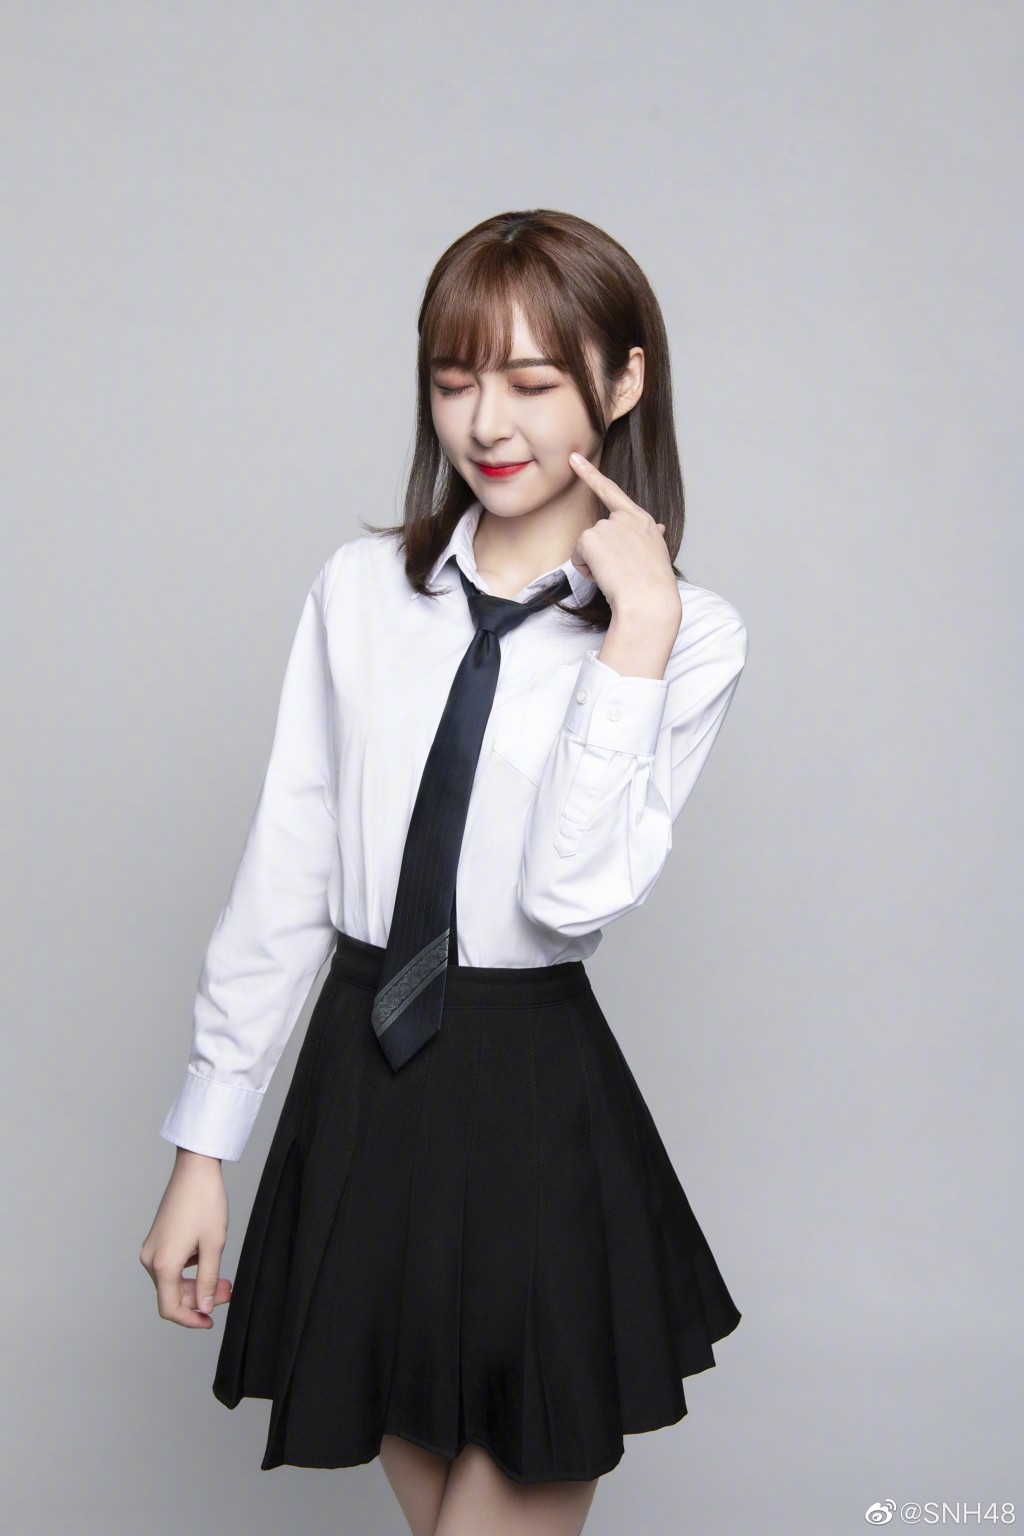 SNH48张语格白衬衫纯美照片